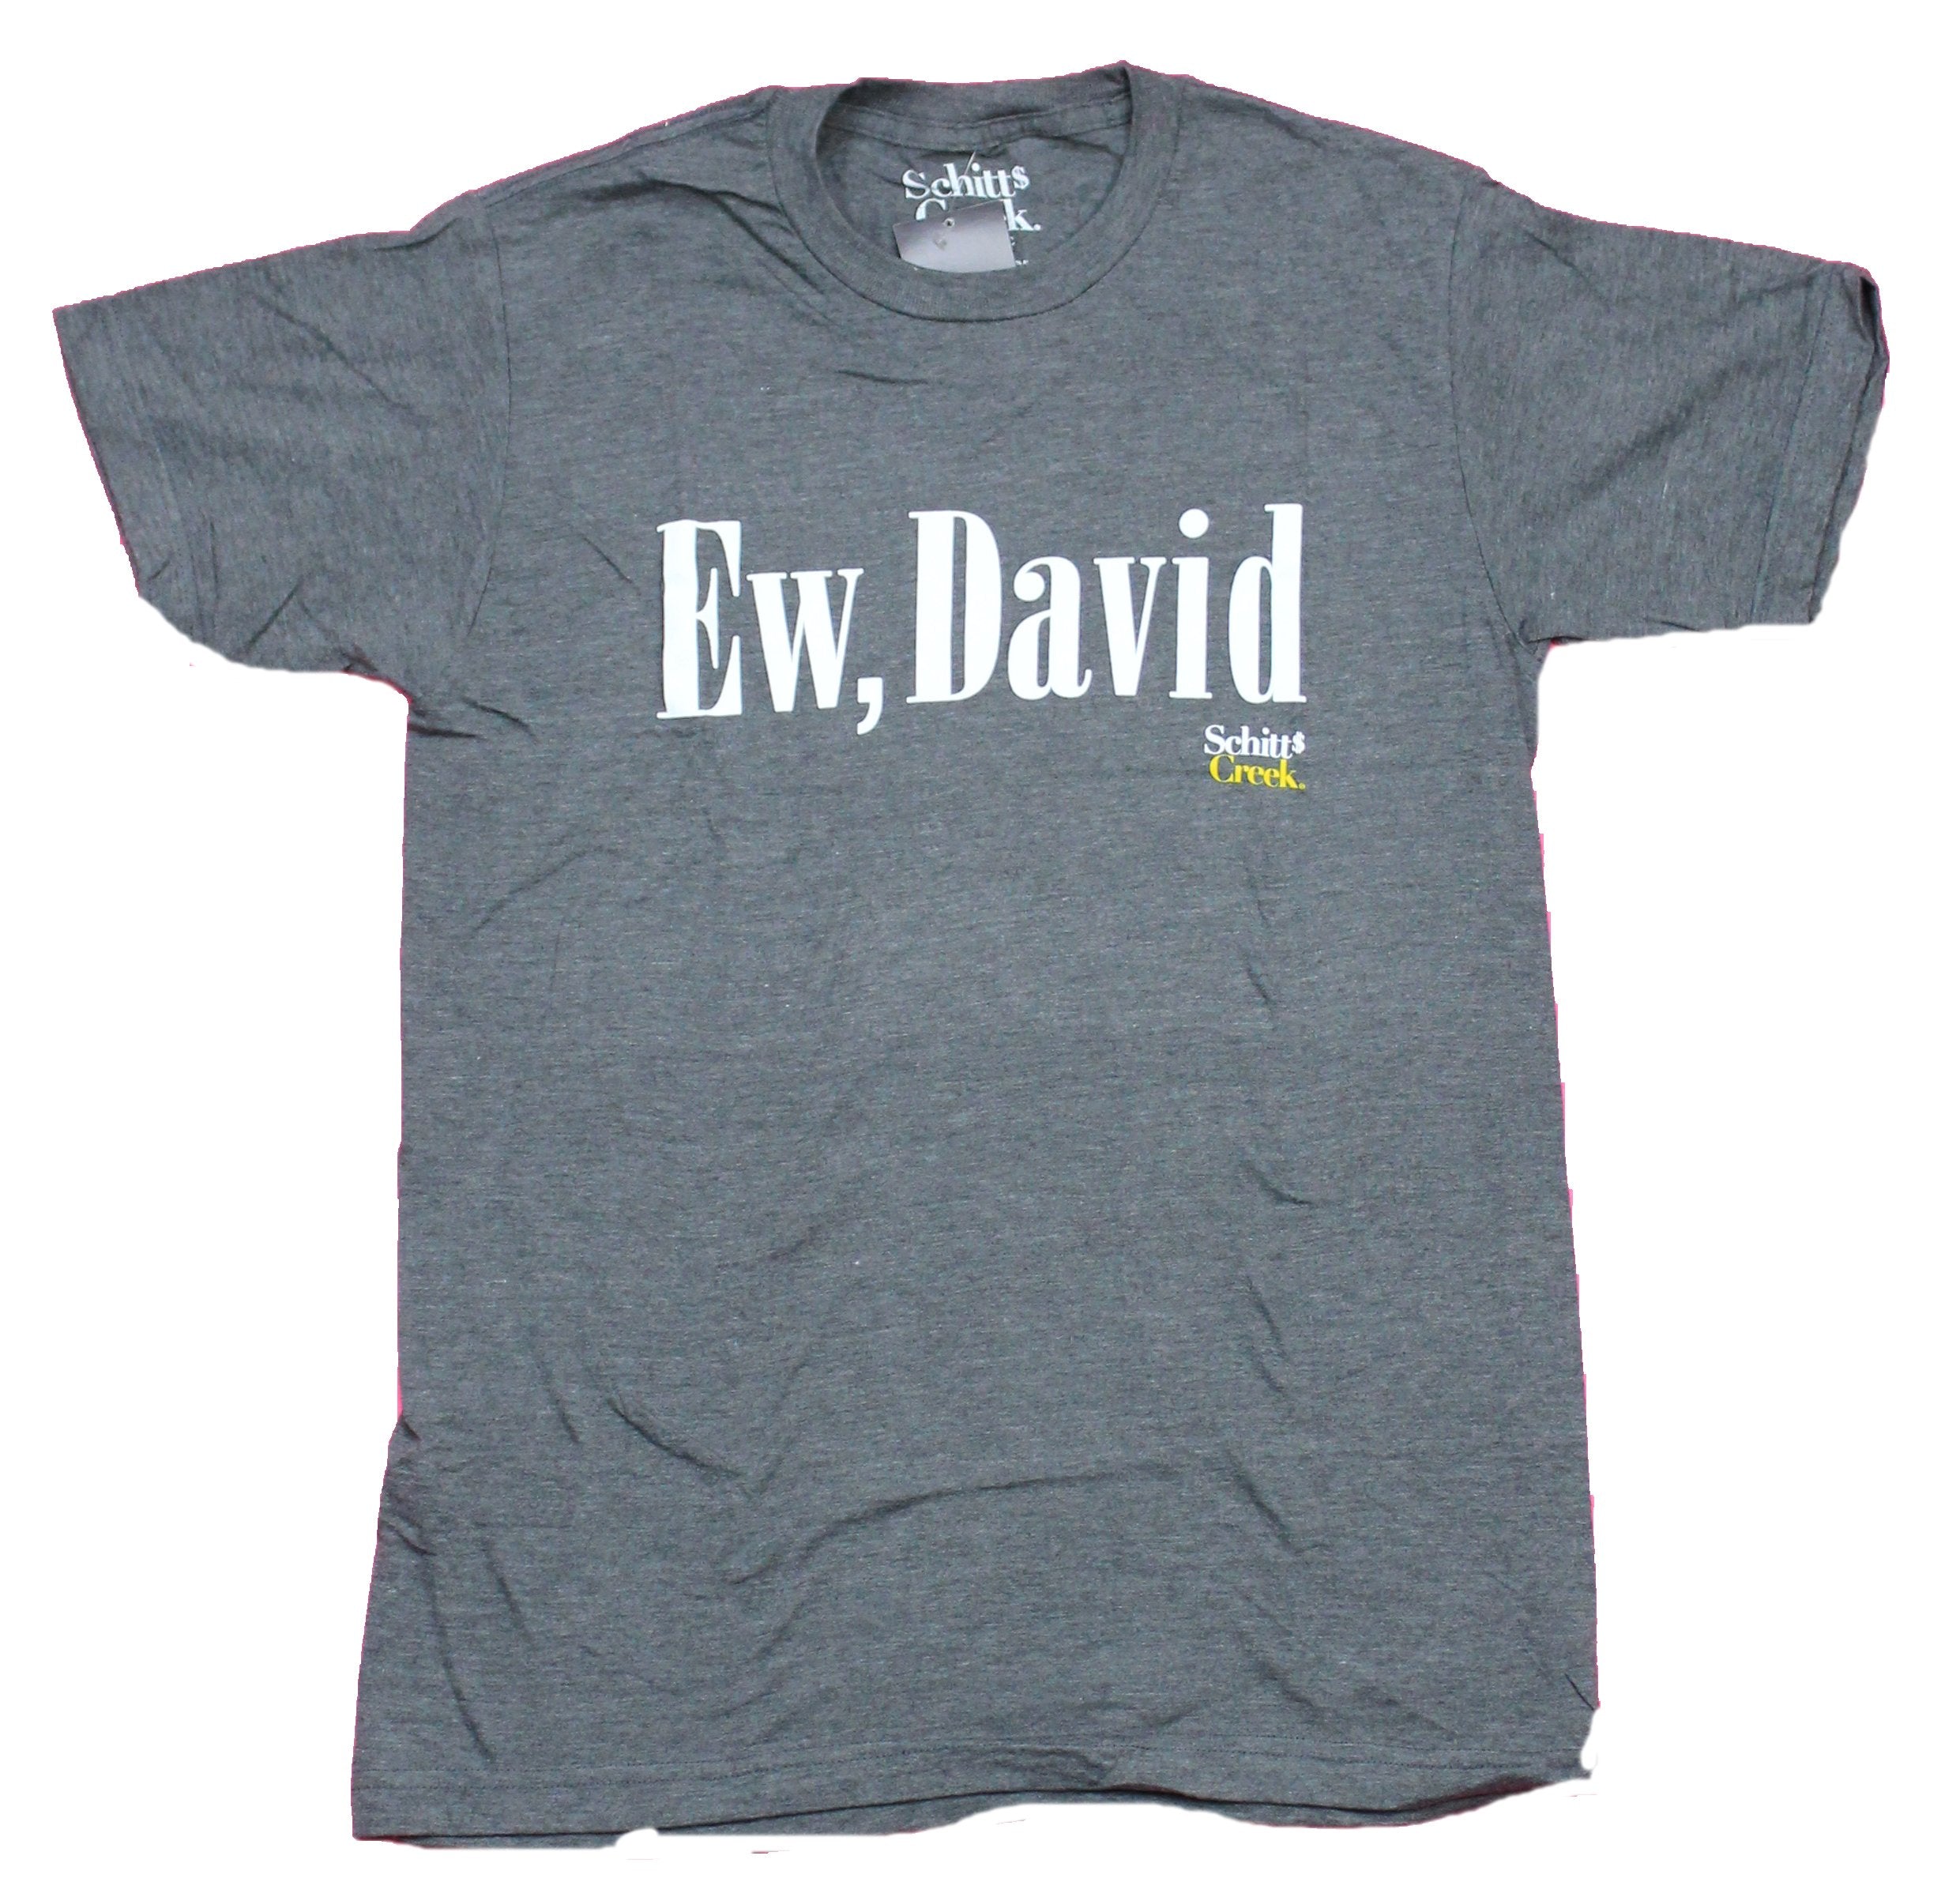 Schitt's Creek Mens T-Shirt - Ew, David Quote Image